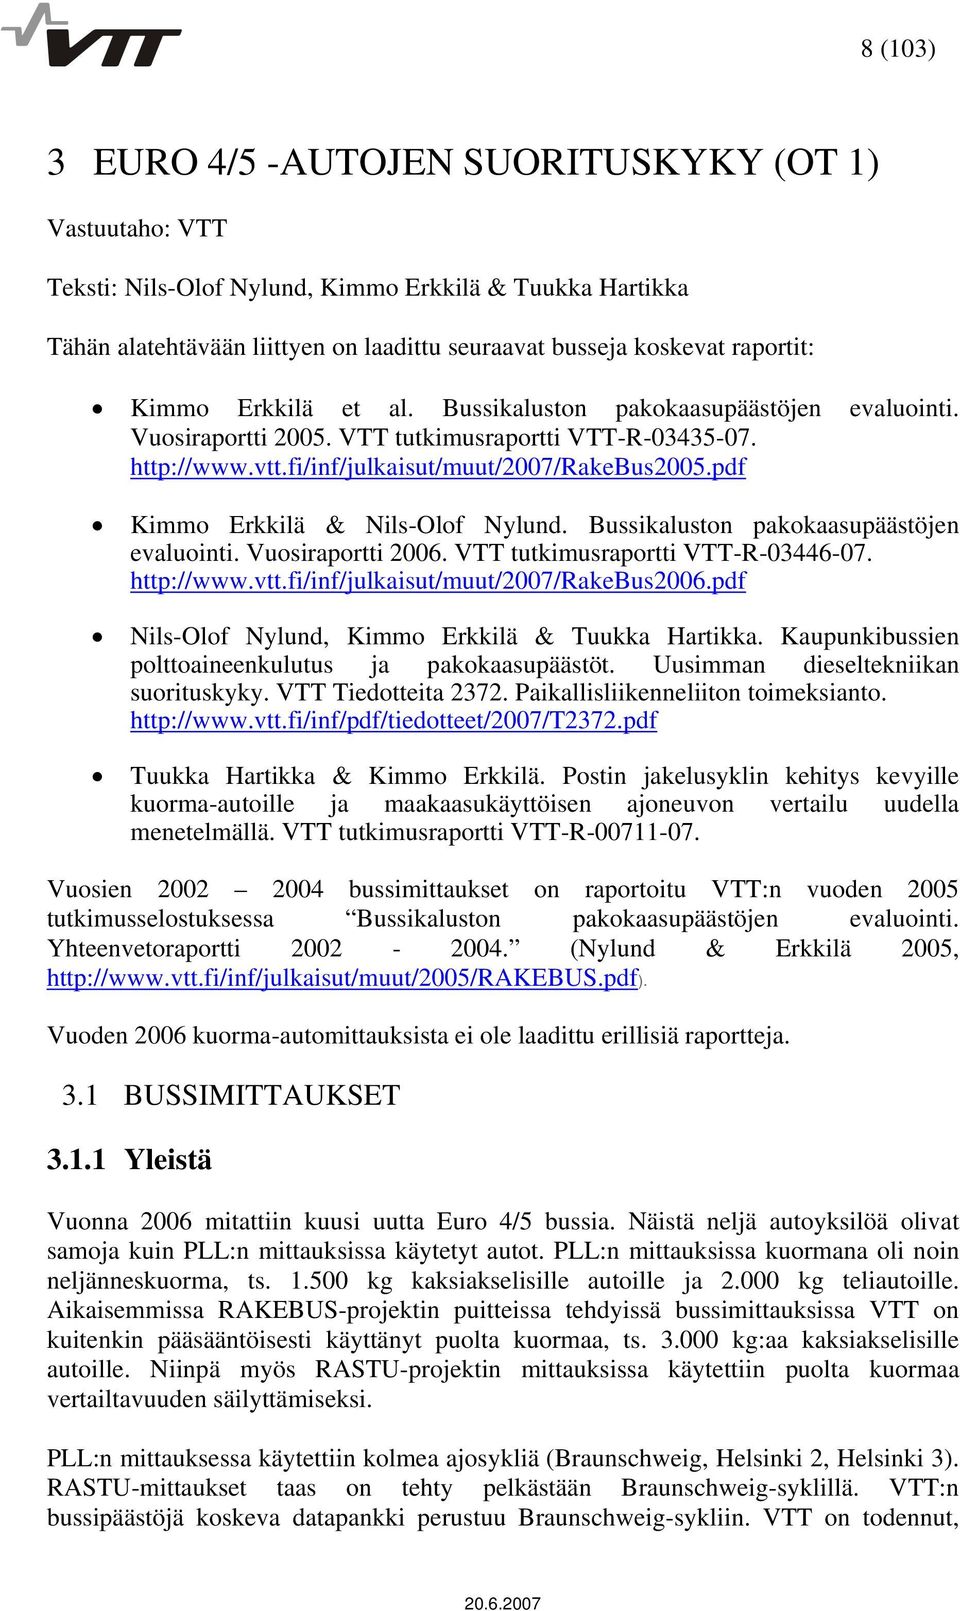 pdf Kimmo Erkkilä & Nils-Olof Nylund. Bussikaluston pakokaasupäästöjen evaluointi. Vuosiraportti 2006. VTT tutkimusraportti VTT-R-03446-07. http://www.vtt.fi/inf/julkaisut/muut/2007/rakebus2006.